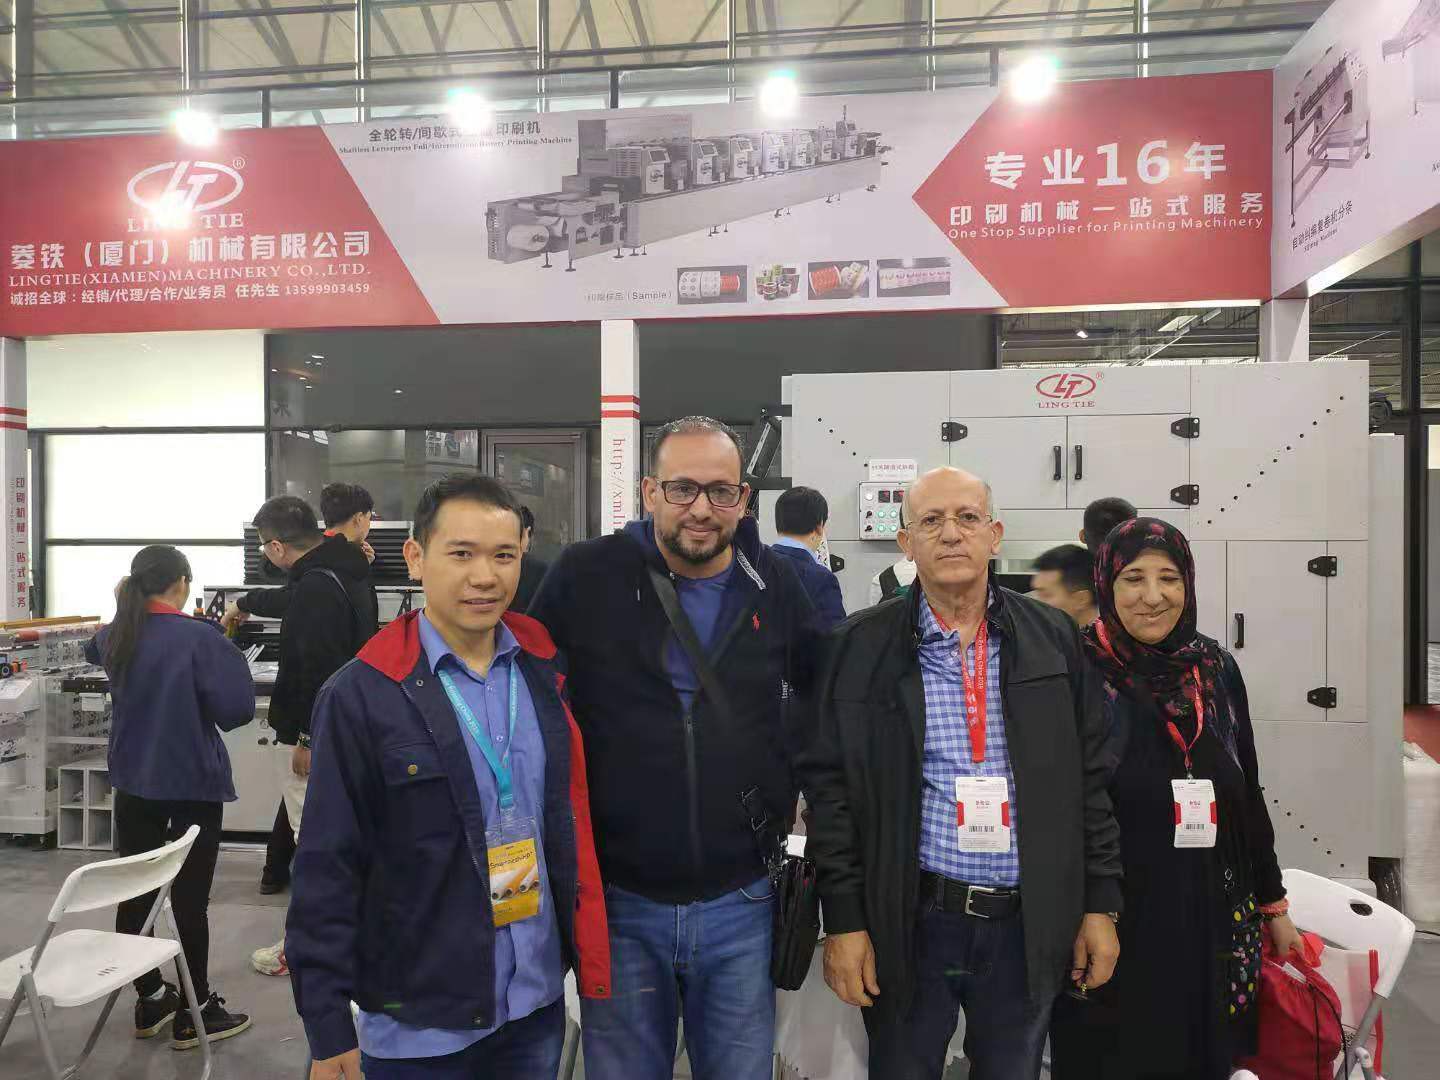 معرض الطباعة الرقمية على النسيج في شنغهاي